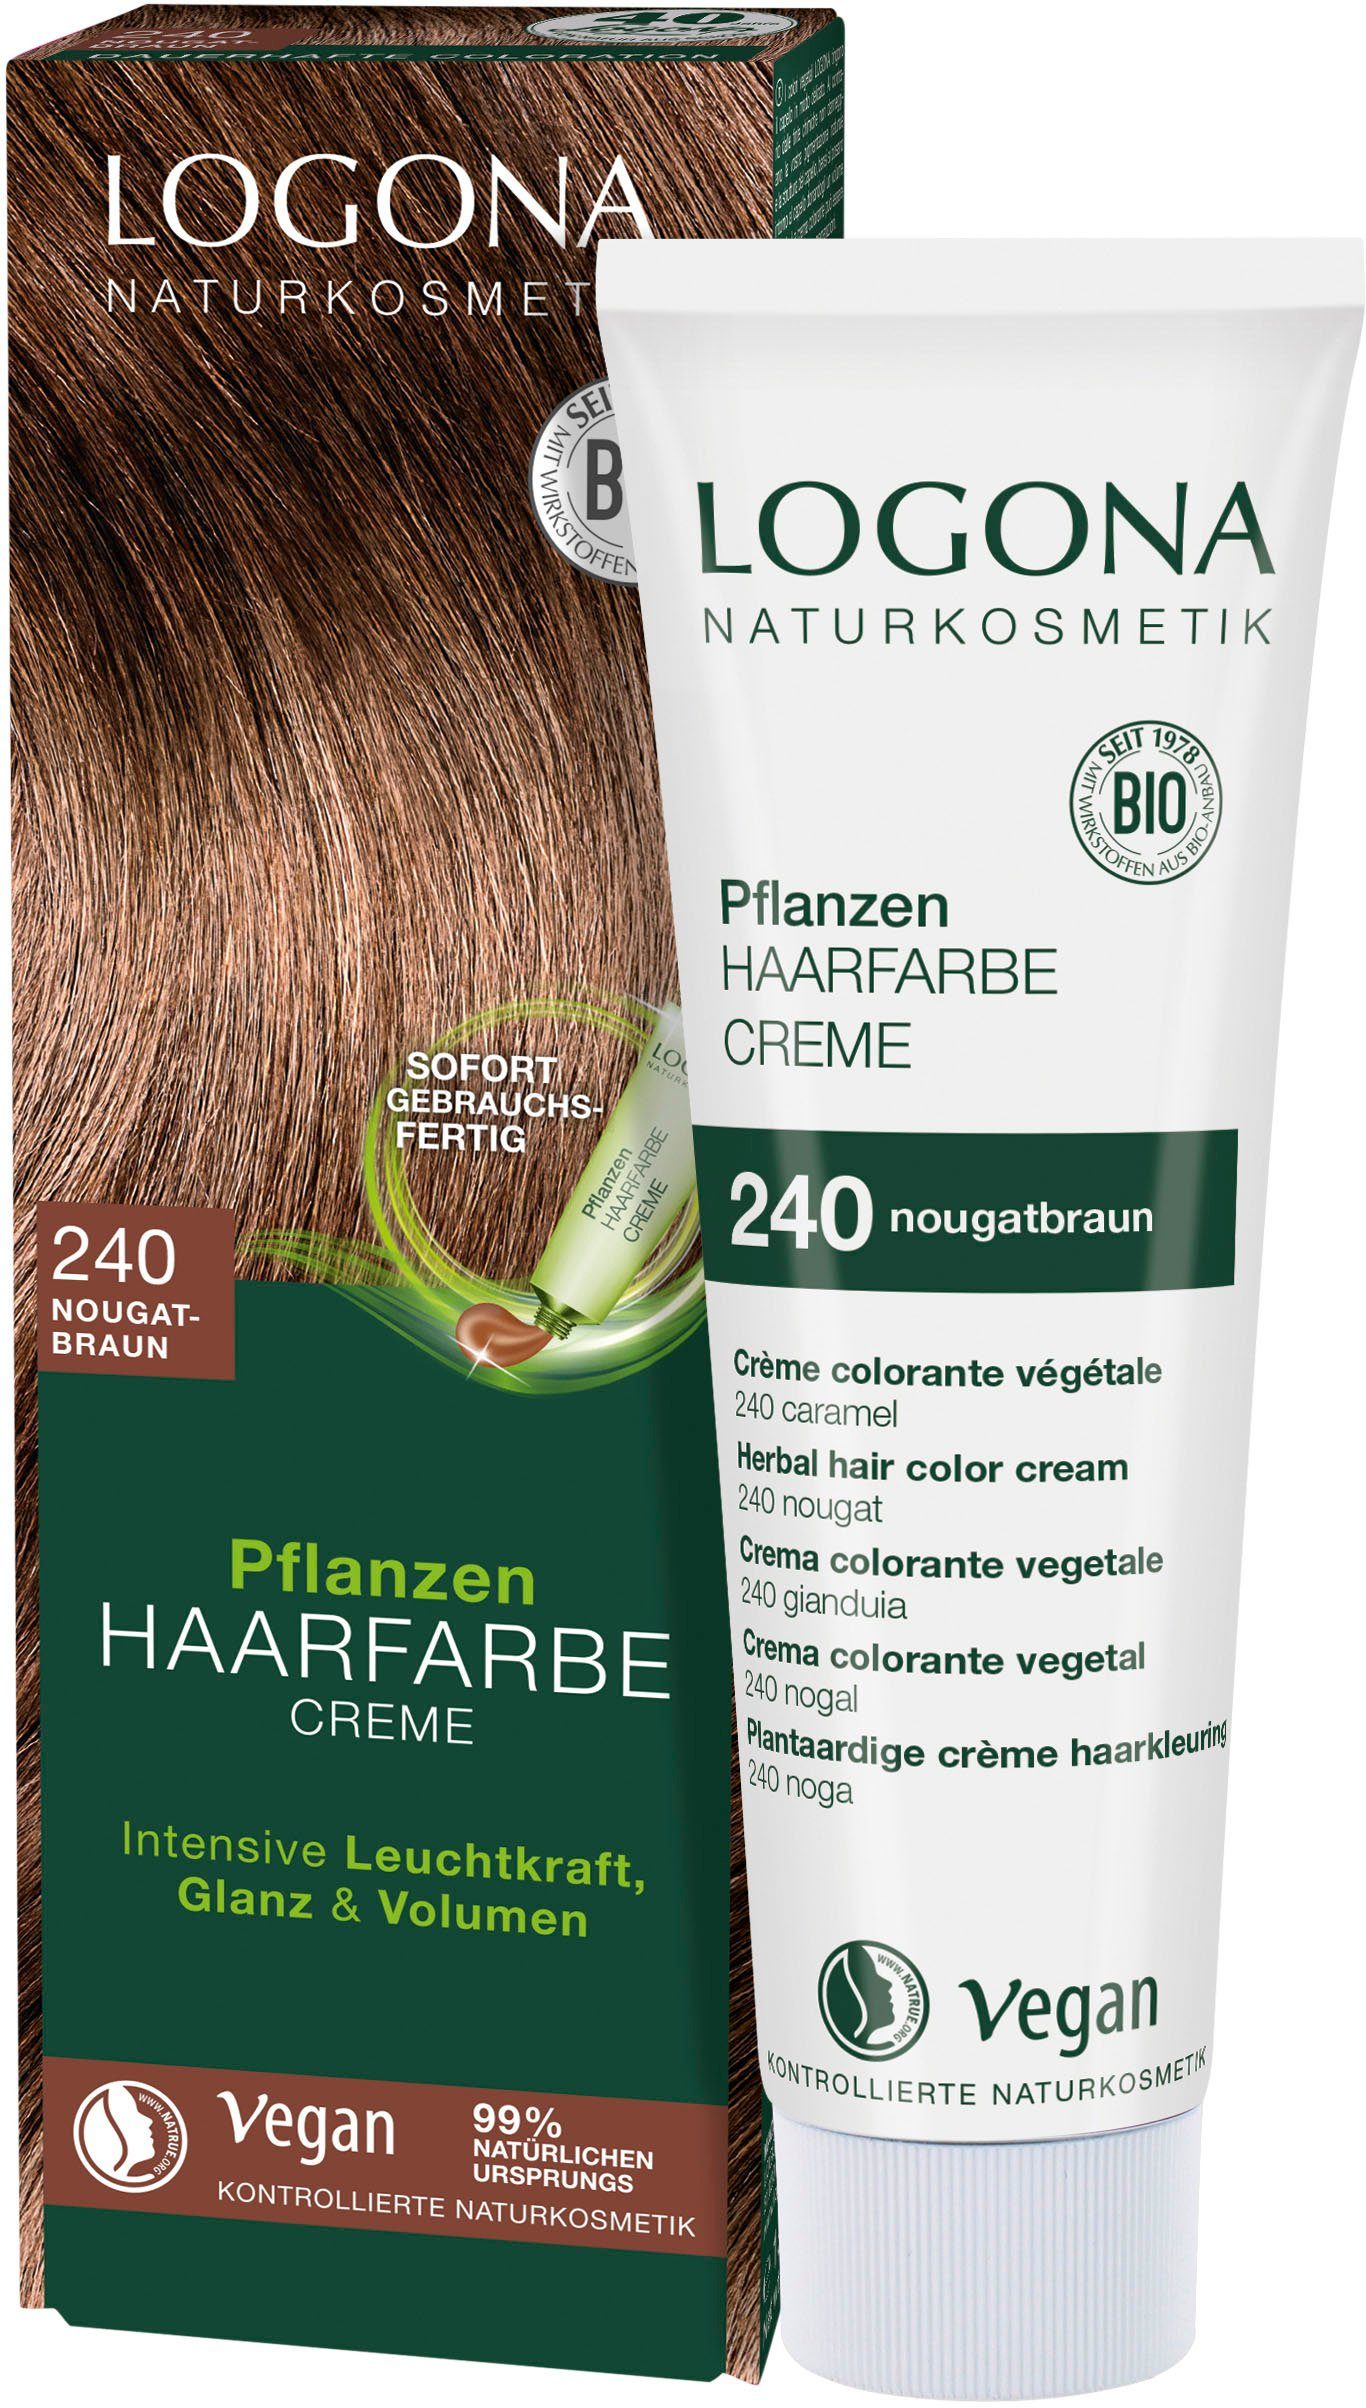 Haarfarbe Logona nougatbraun Creme 240 Pflanzen-Haarfarbe LOGONA